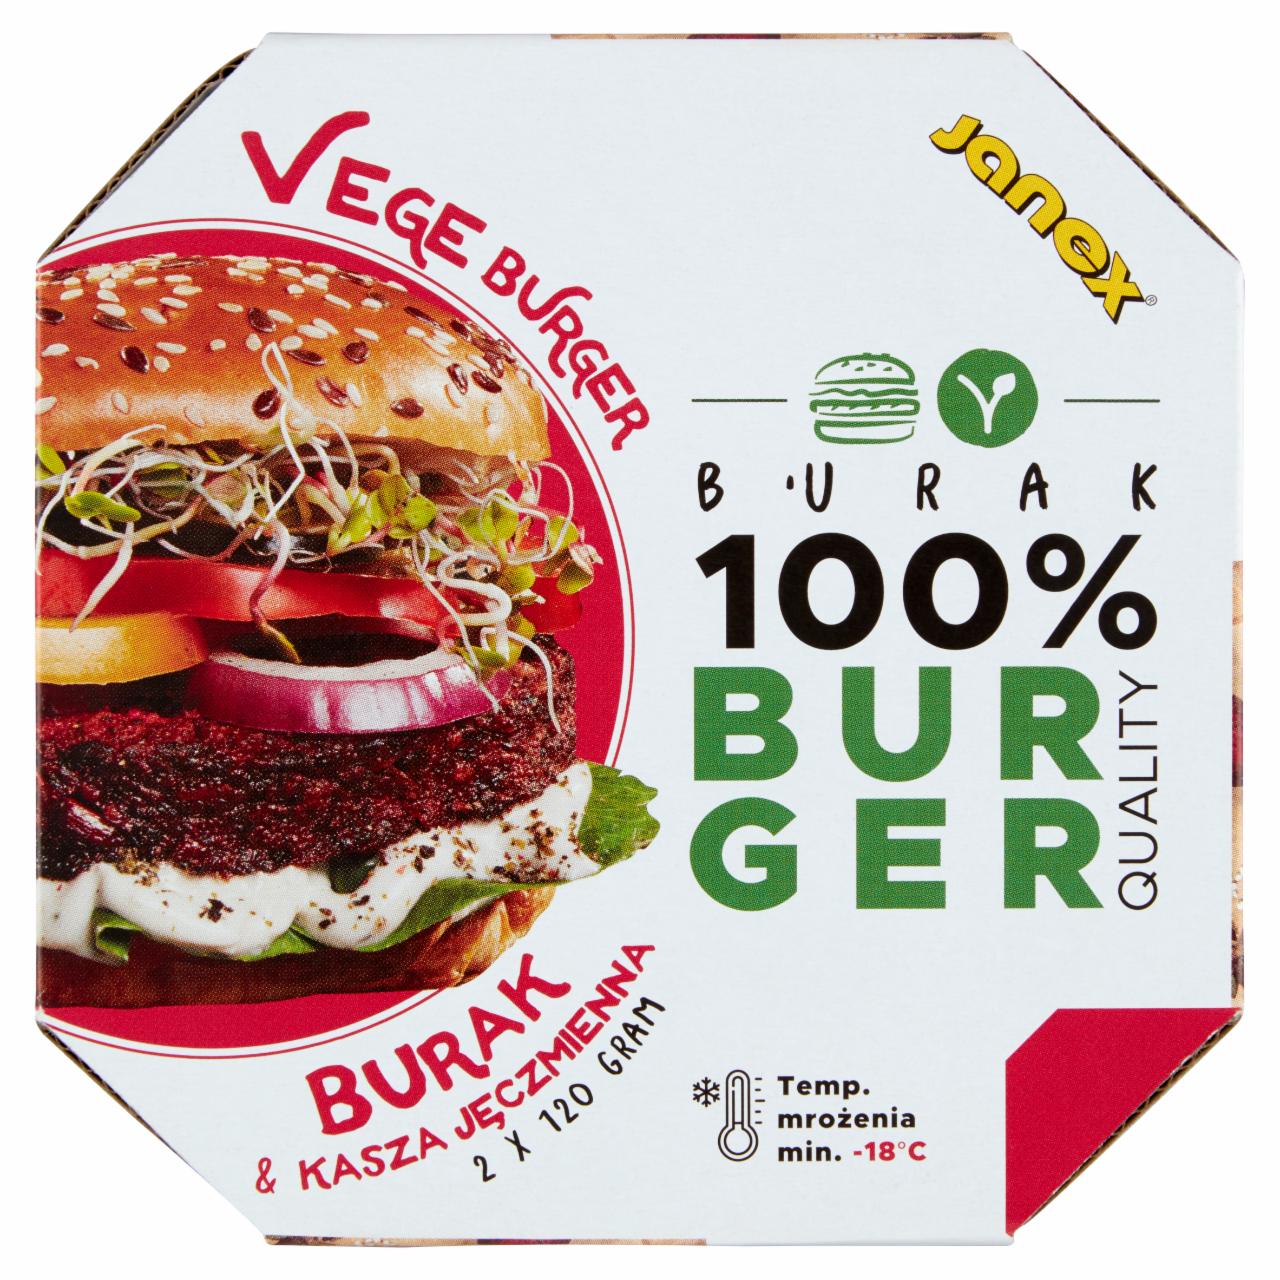 Zdjęcia - Vege burger z buraka i kaszy jęczmiennej 240 g (2 x 120 g)